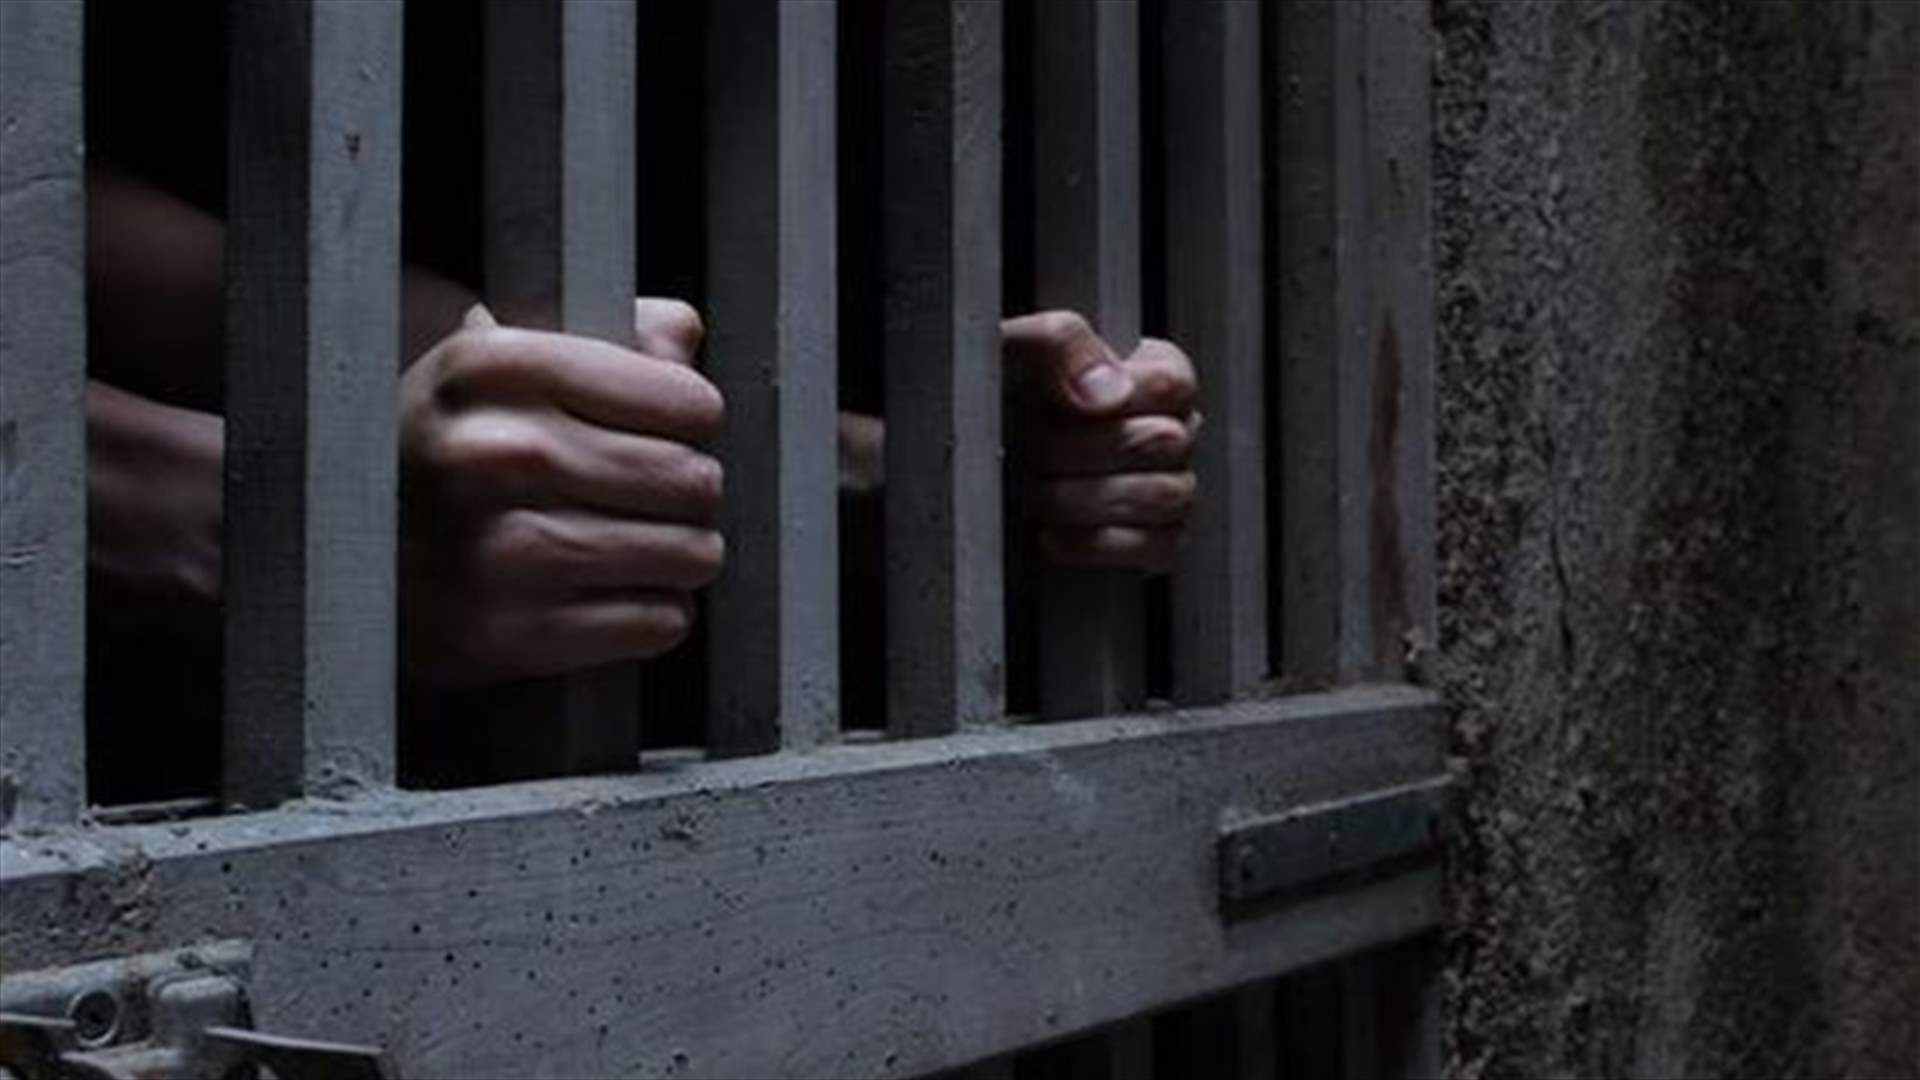 السجن المؤبّد للمتّهمين باعتداءي باردو وسوسة في تونس